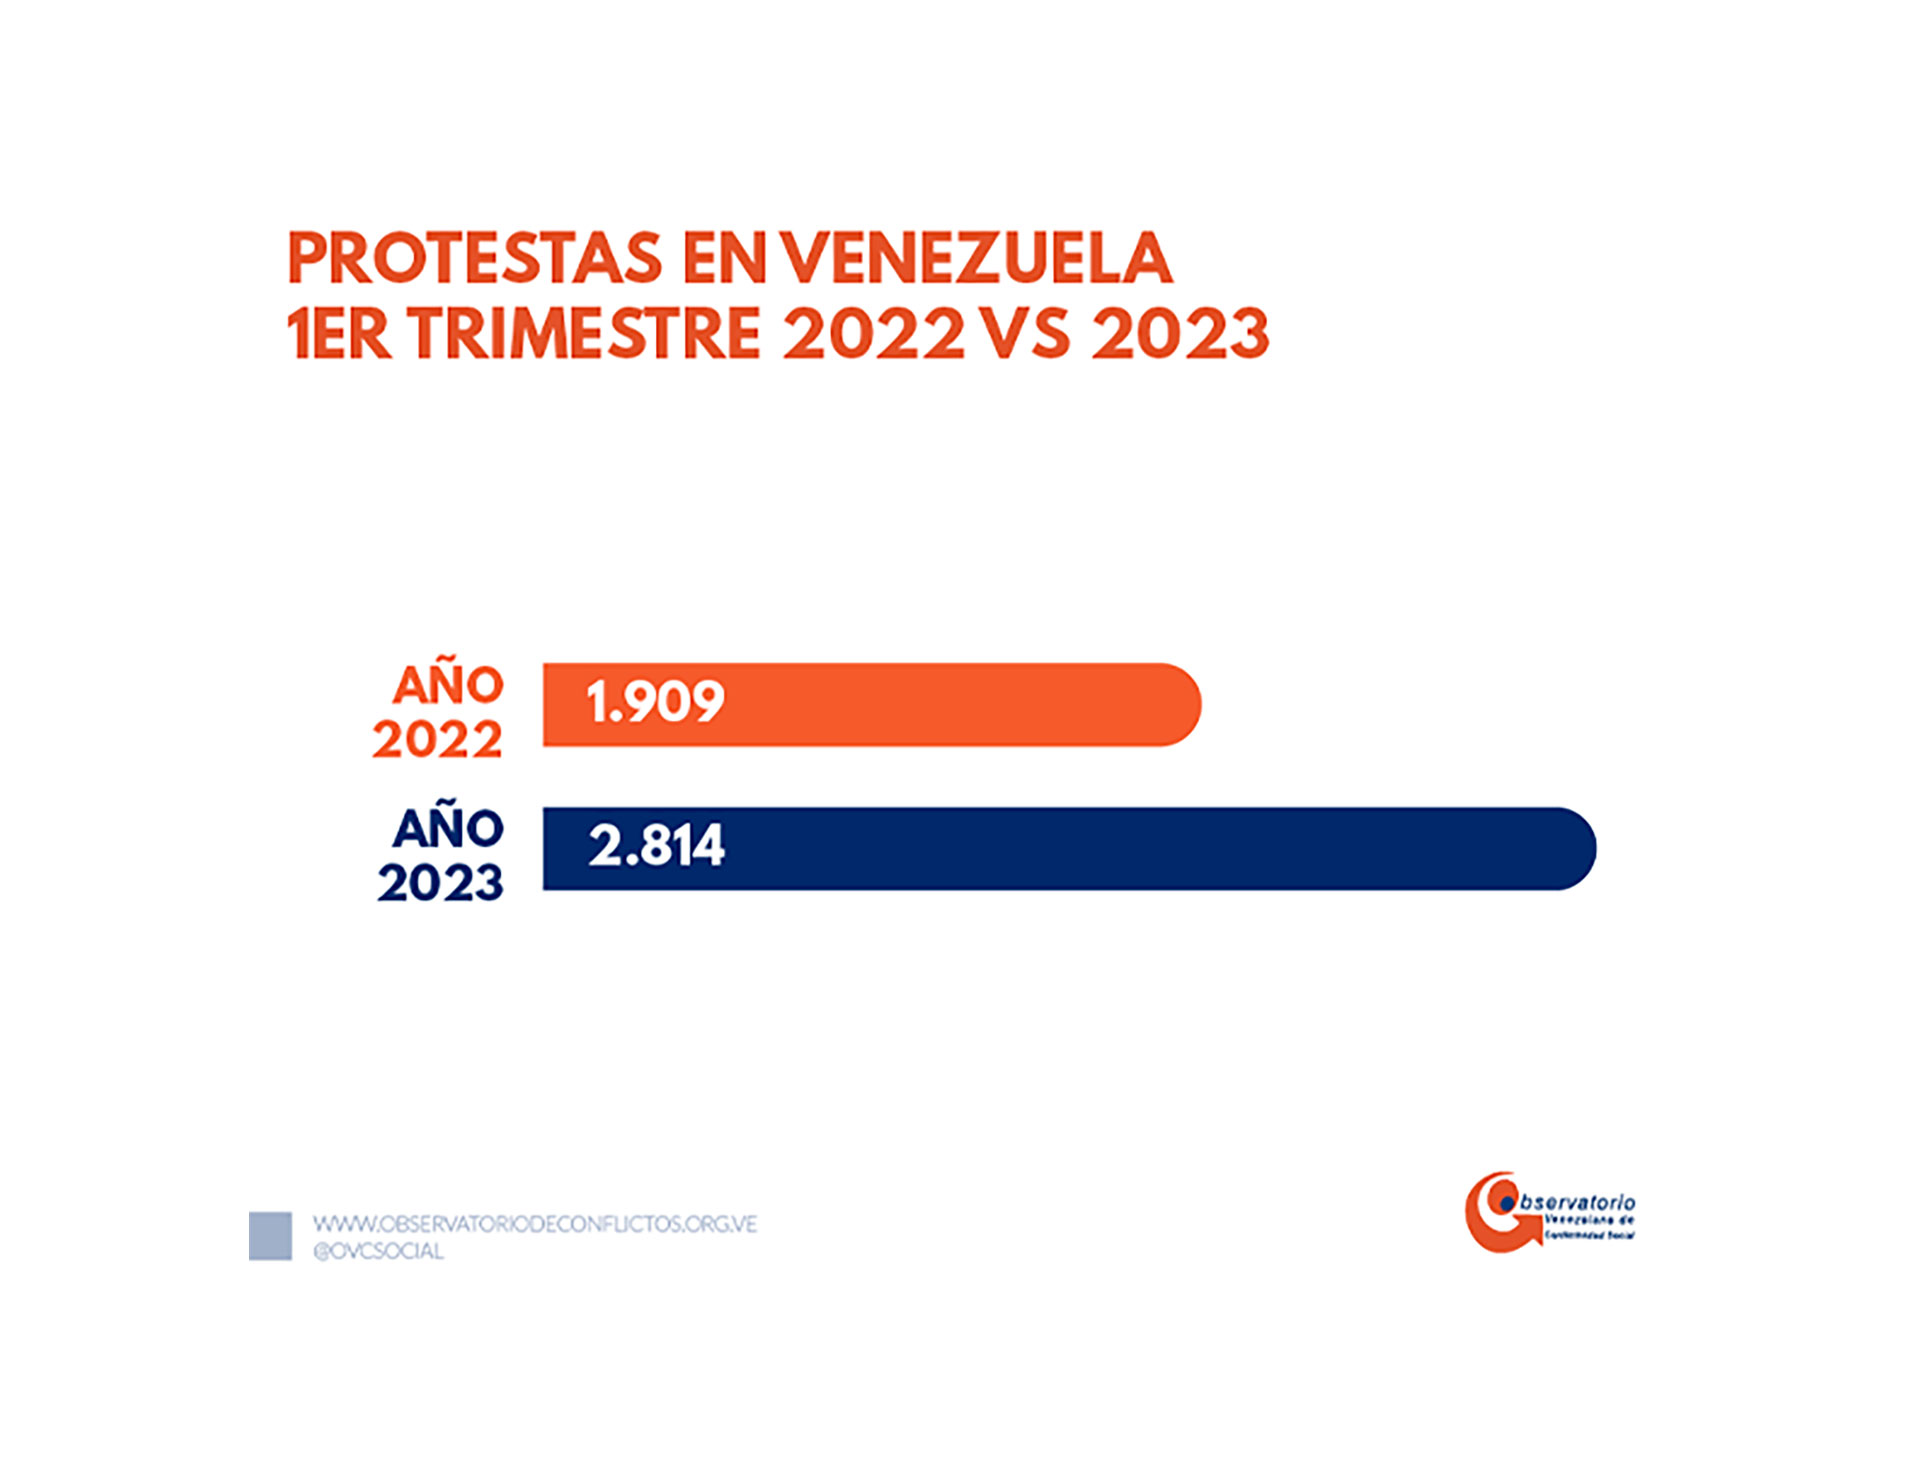 Las protestas en Venezuela en el primer trimestre de 2023 en comparación con el mismo periodo del año pasado (Crédito: Observatorio Venezolano de Conflictividad Social)